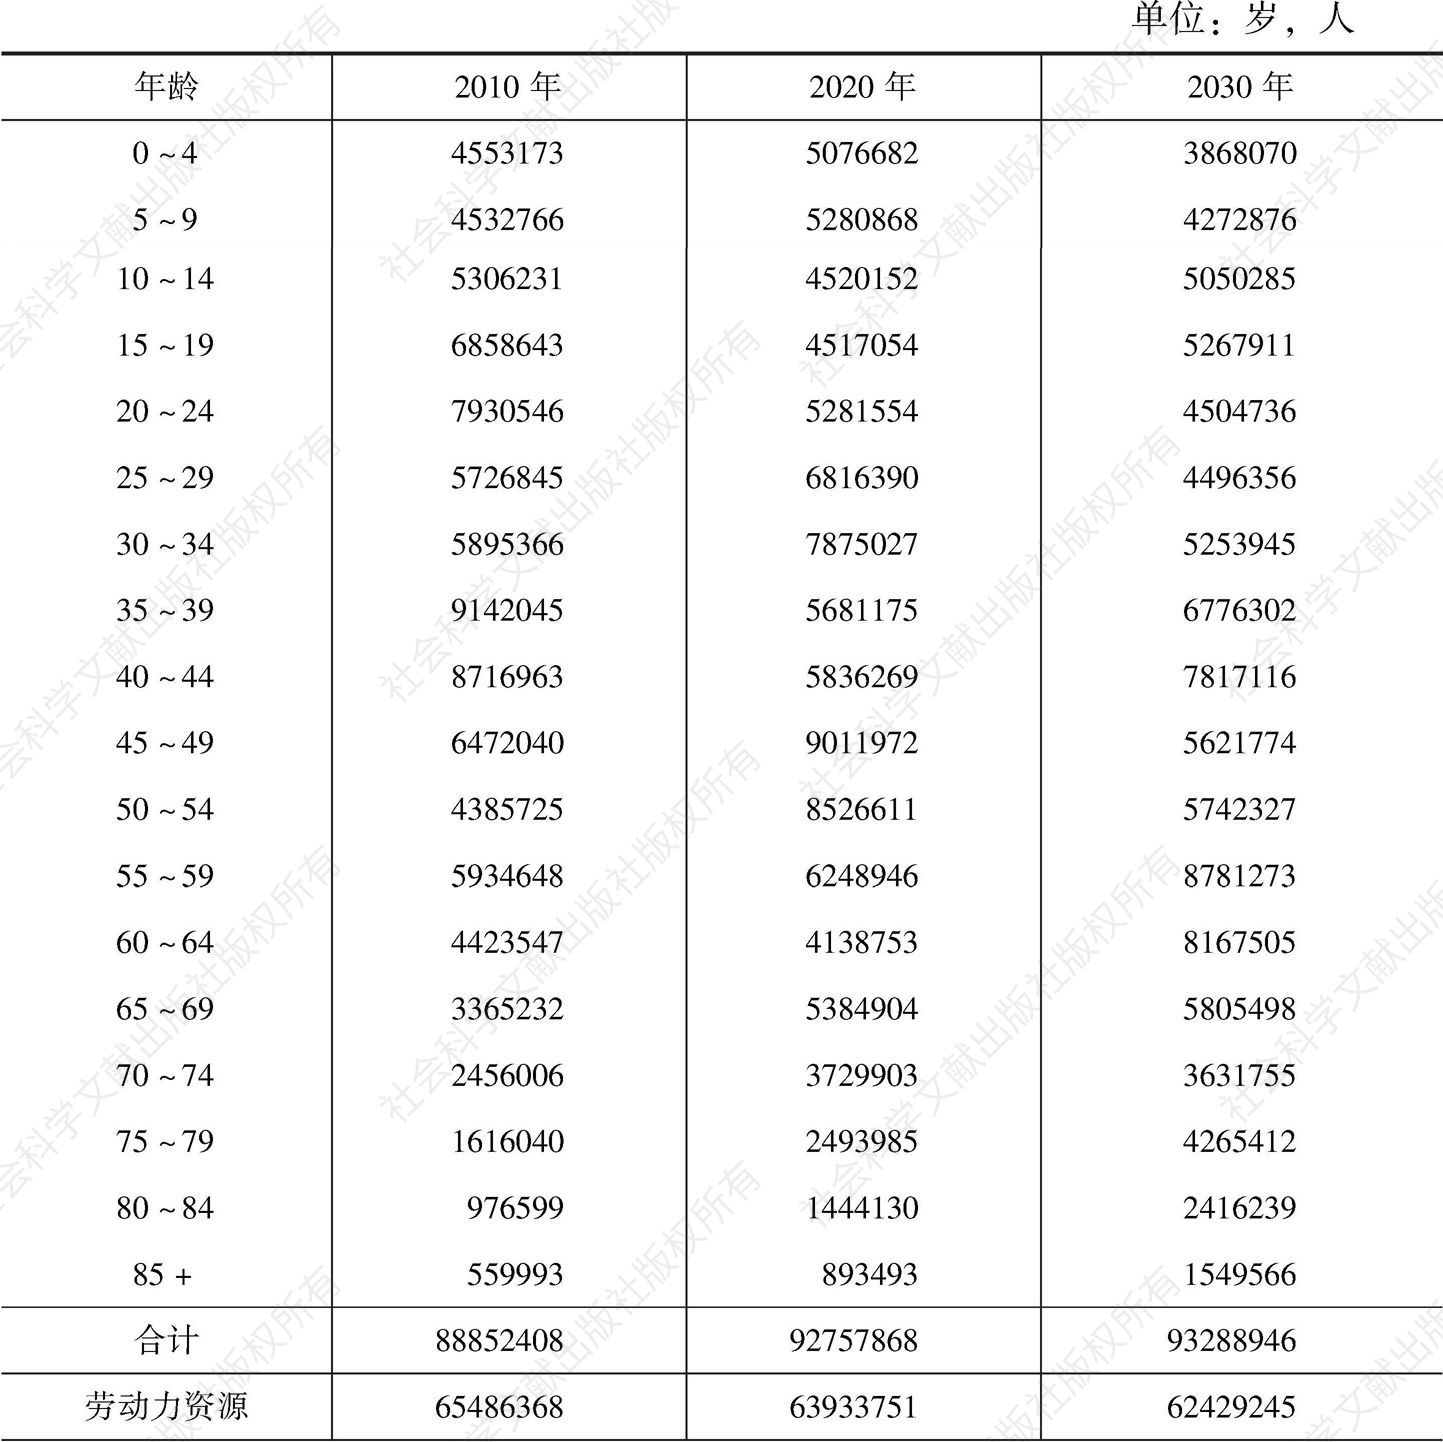 表10-9 四川省人口规模自然变动预测